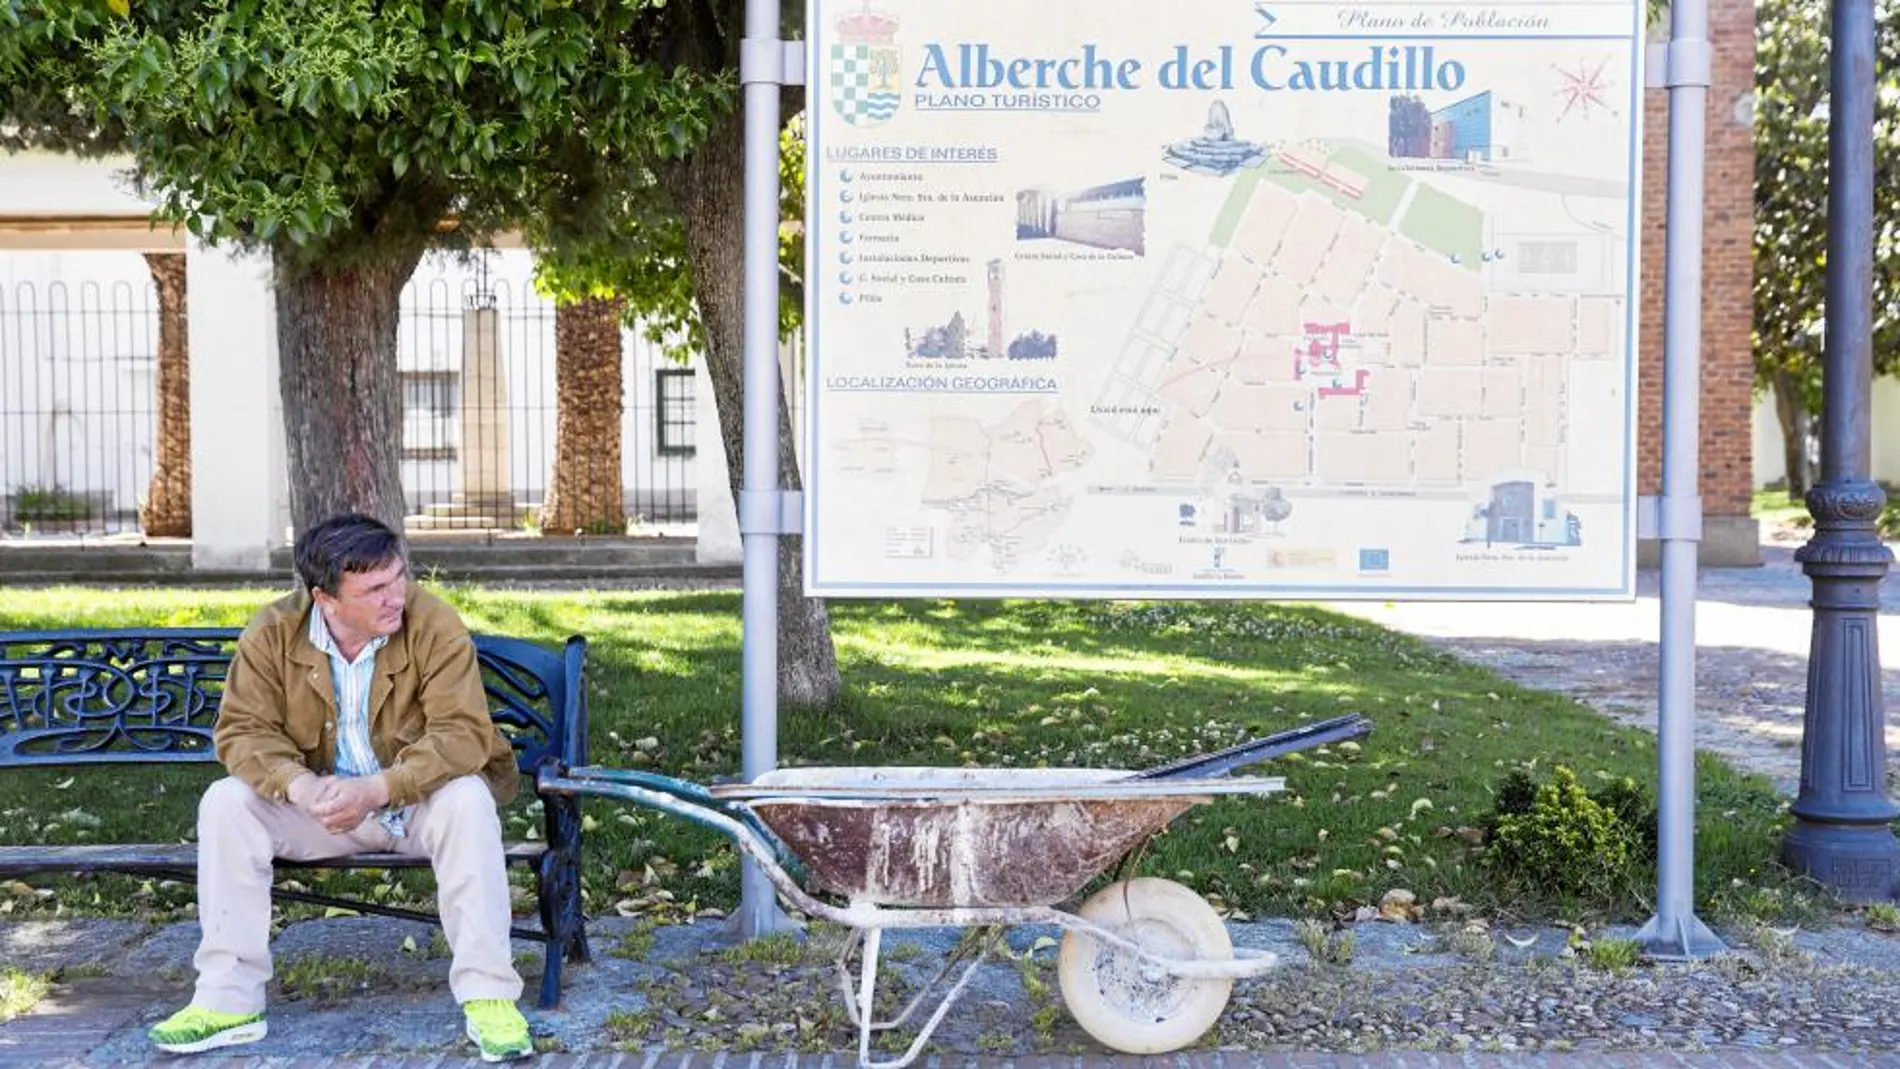 Un vecino de Alberche del Caudillo hace un descanso en mitad de la jornada en la plaza de de esta localidad toledana creada por Franco en los años cincuenta